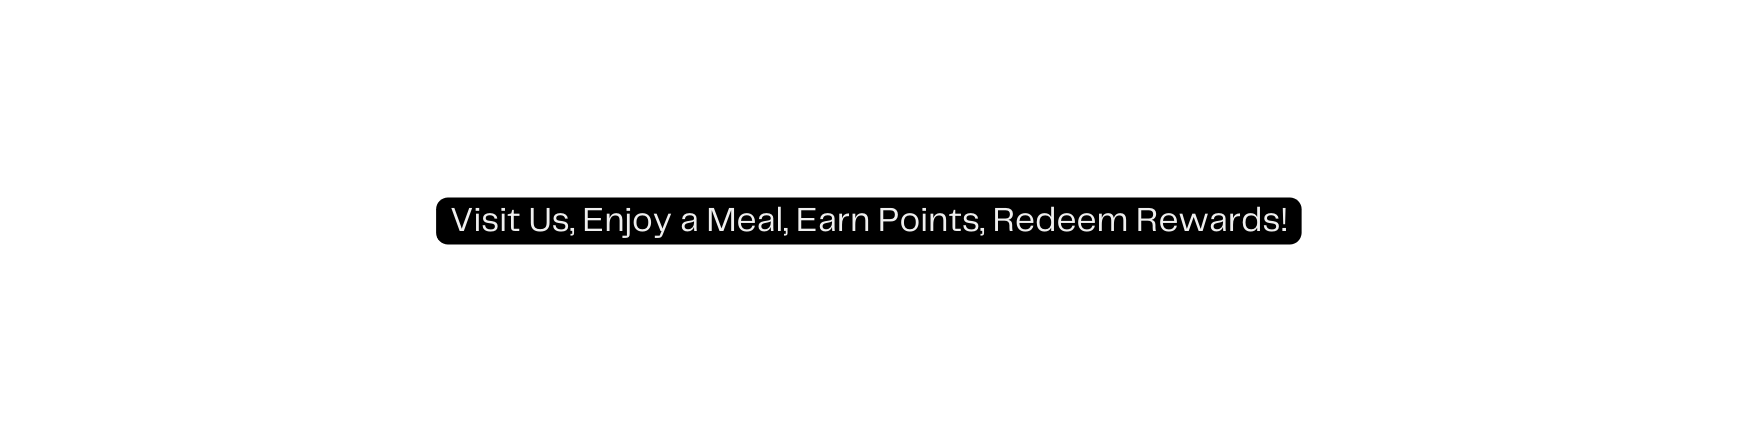 Visit Us Enjoy a Meal Earn Points Redeem Rewards